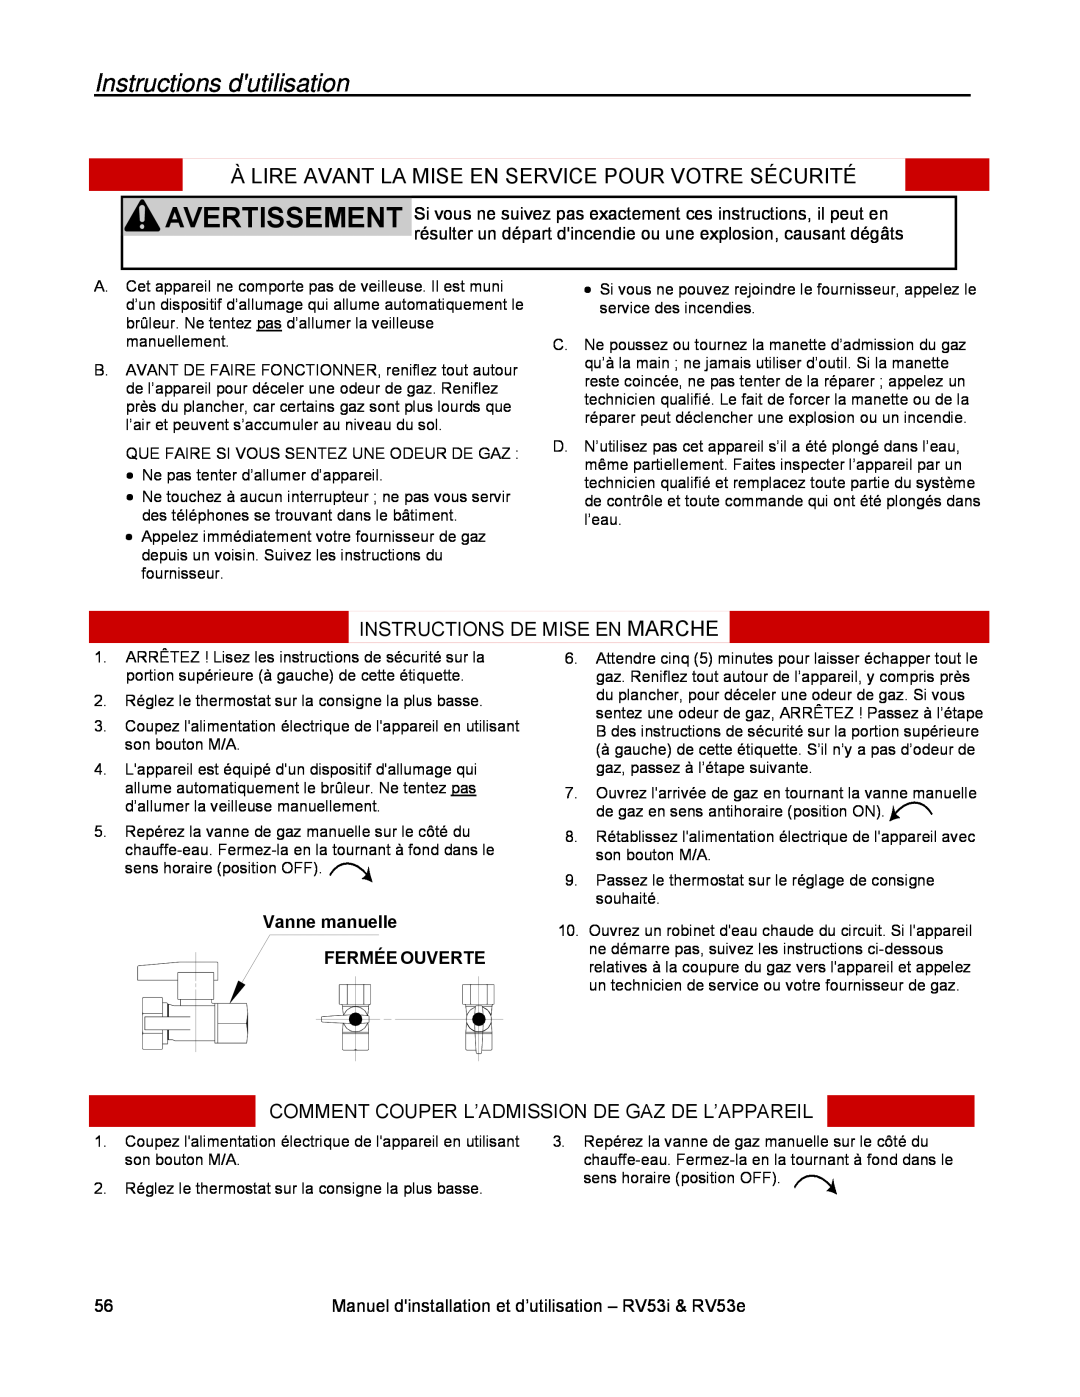 Rinnai RV53E Instructions dutilisation, Instructions De Mise En Marche, Comment Couper L’Admission De Gaz De L’Appareil 